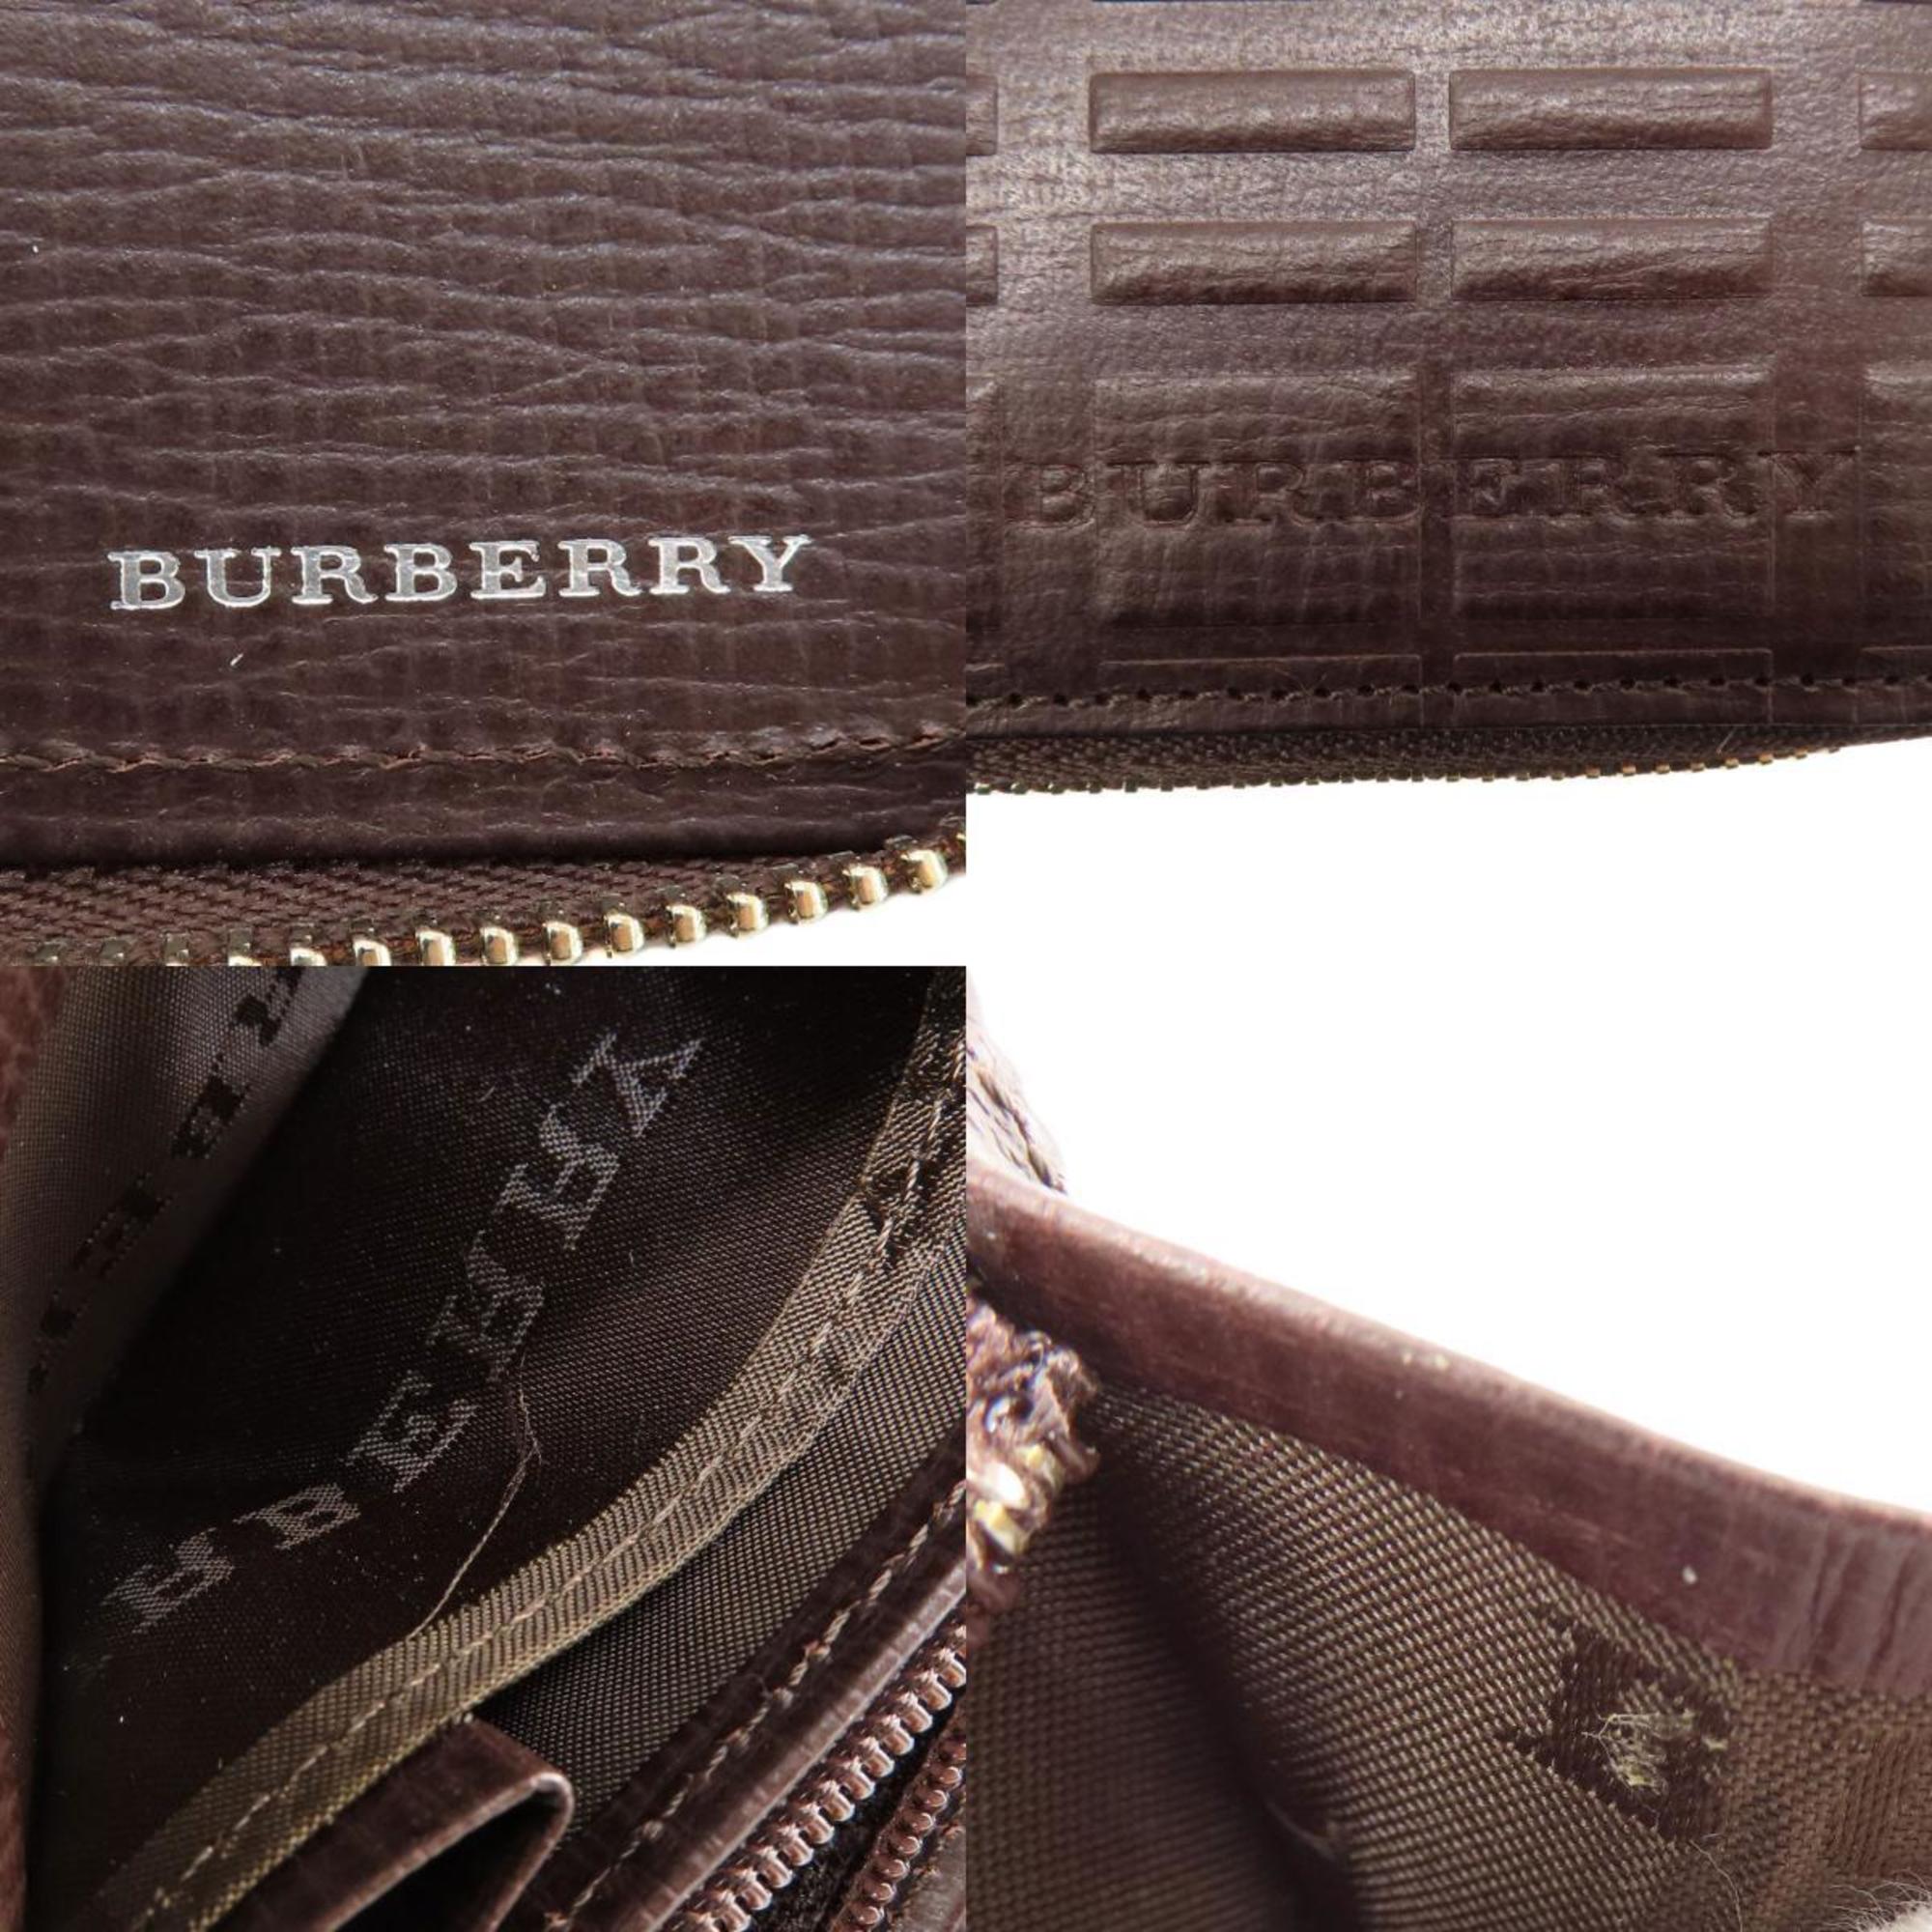 Burberry motif key L-shaped bi-fold wallet leather men's women's